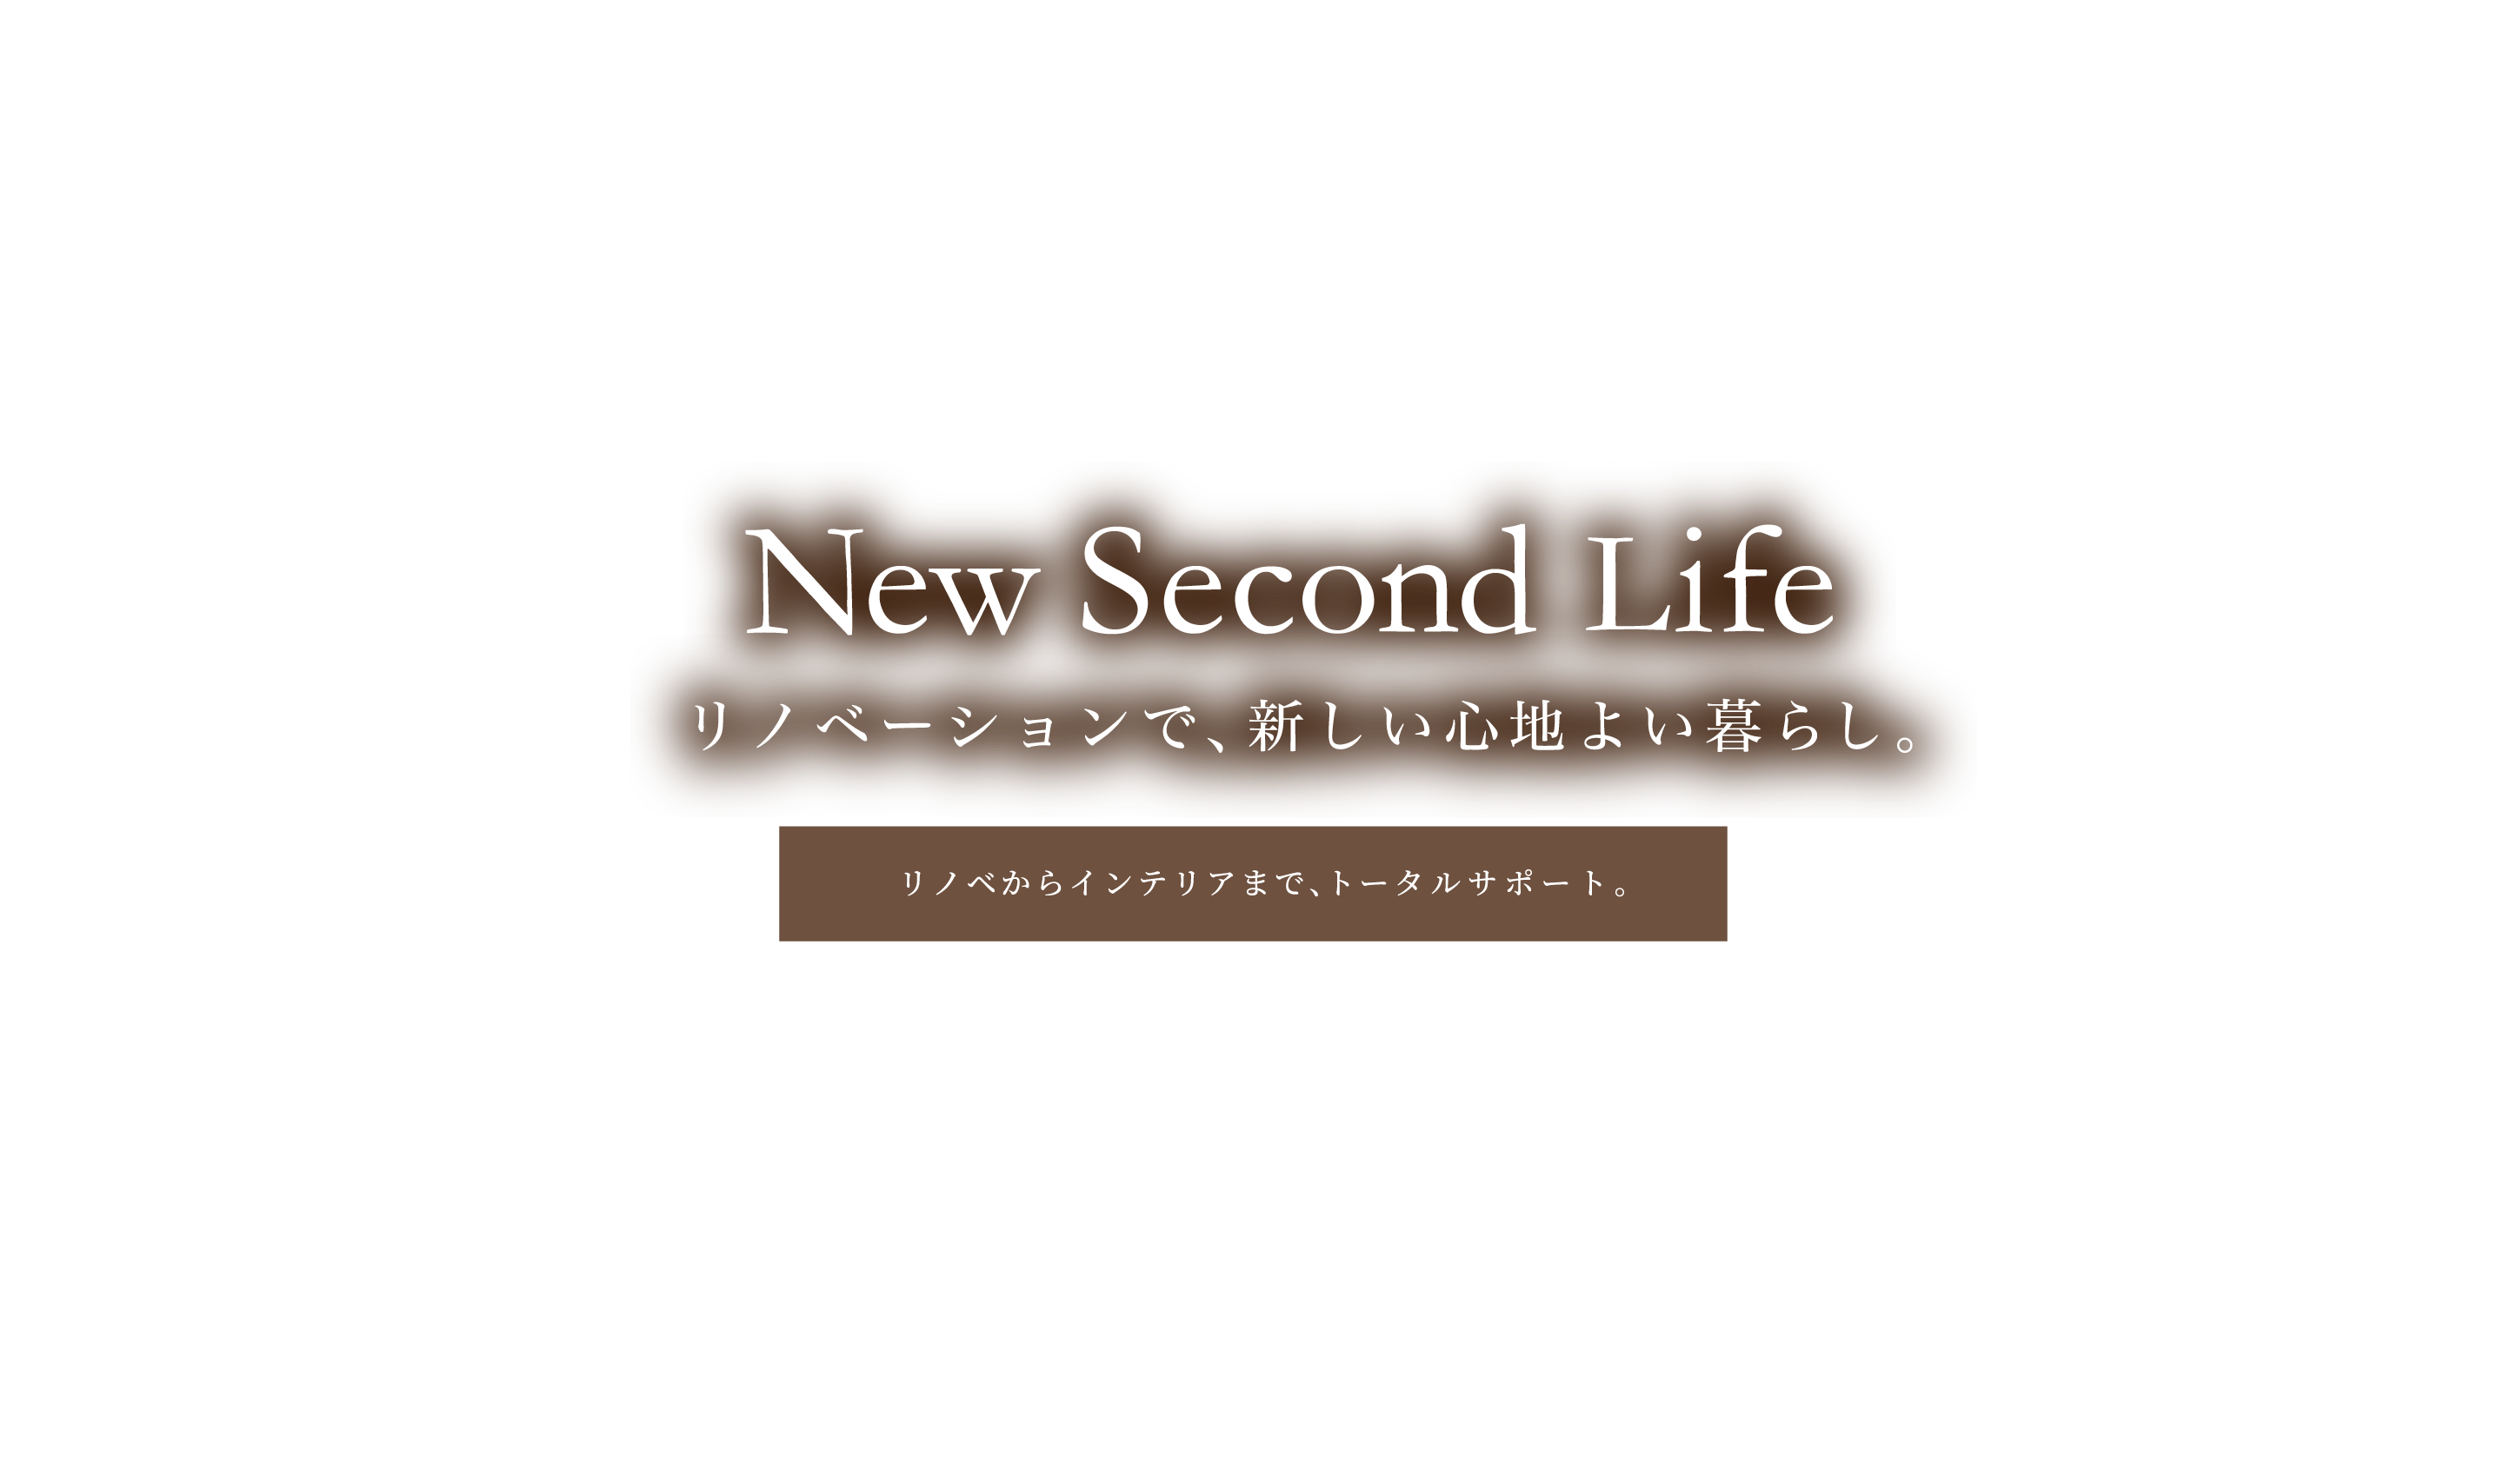 New Second Life リノベーションで、新しい心地よい暮らし。 リノベからインテリアまで、トータルサポート。